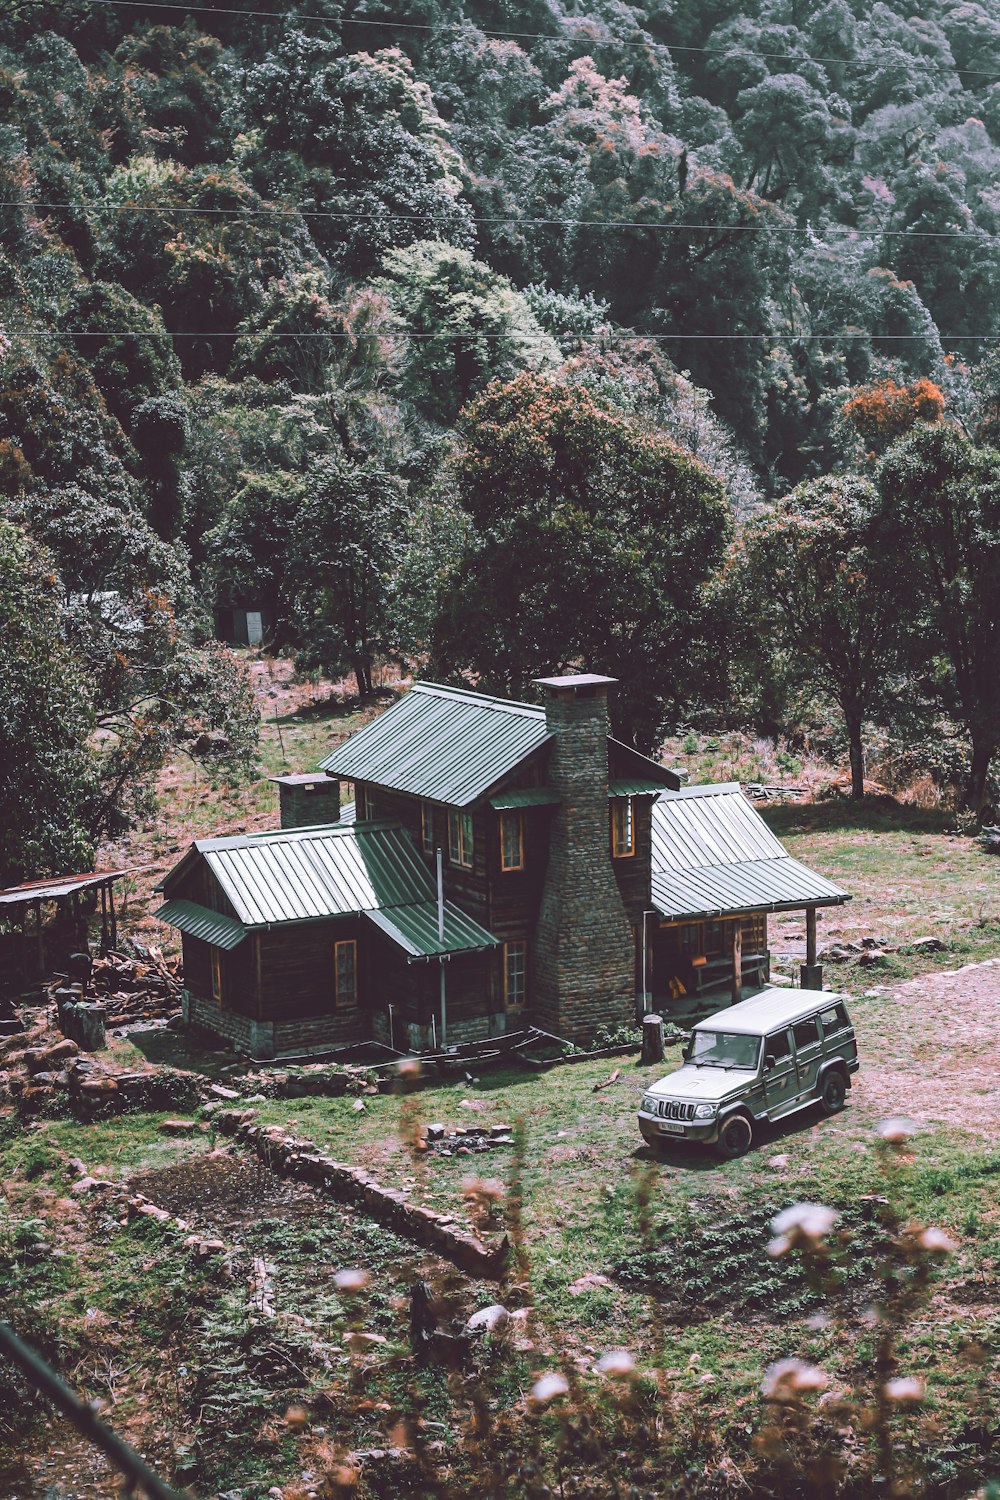 carro preto estacionado ao lado da casa de madeira verde e marrom durante o dia